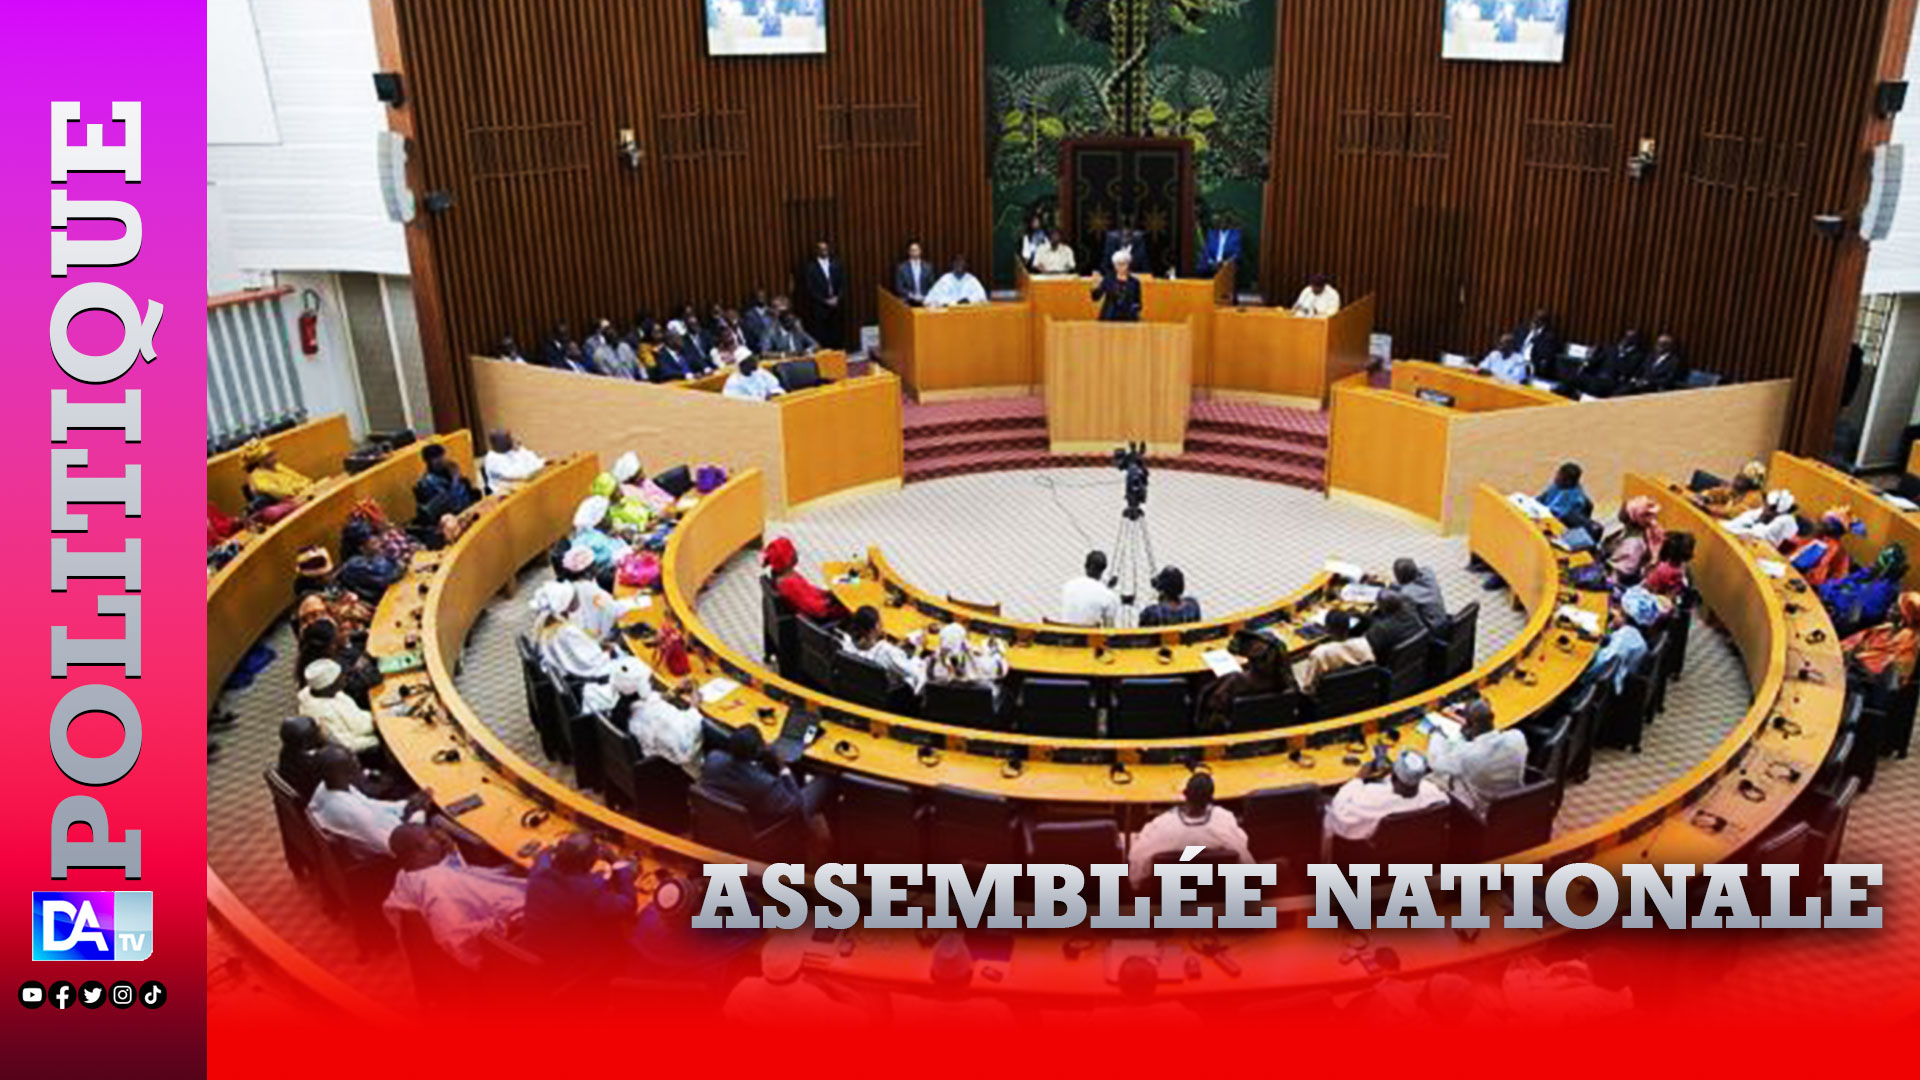 Assemblé nationale : Les députés sont convoqués en plénière jeudi et vendredi